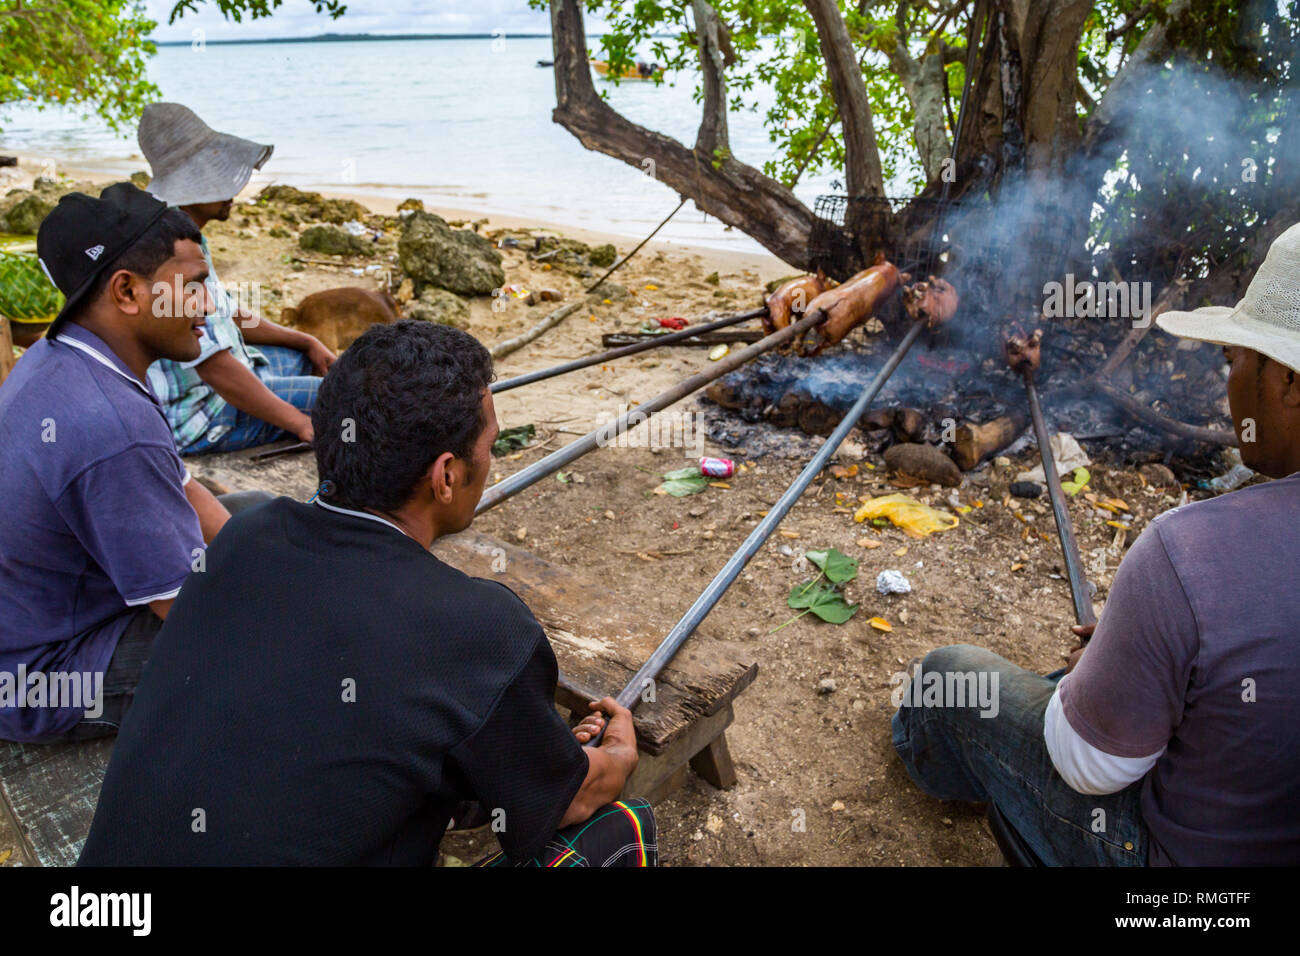 L'île de Tongatapu (Tonga) - 10/01/2014 : groupe de peuples autochtones locaux hommes Polynésien est-ce qu'un barbecue de porc des petits porcelets sur un feu ouvert sur un Tongan beac Banque D'Images